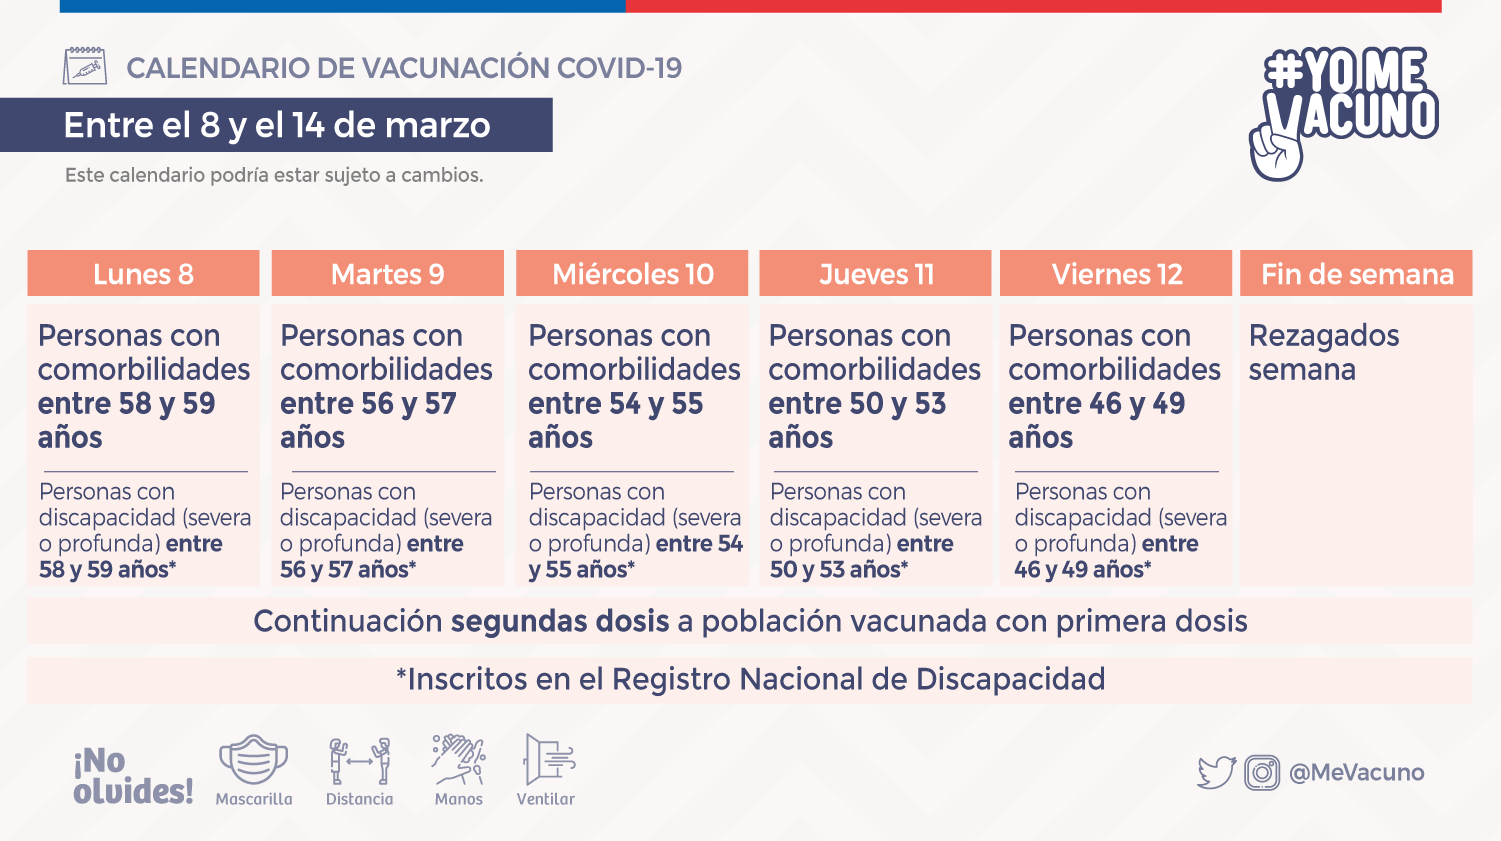 redes-sociales_calendario-vacunacion_SEMANA-6_cs6_redes-sociales_vacunacion-semana-6_8-de-marzo_tw.png